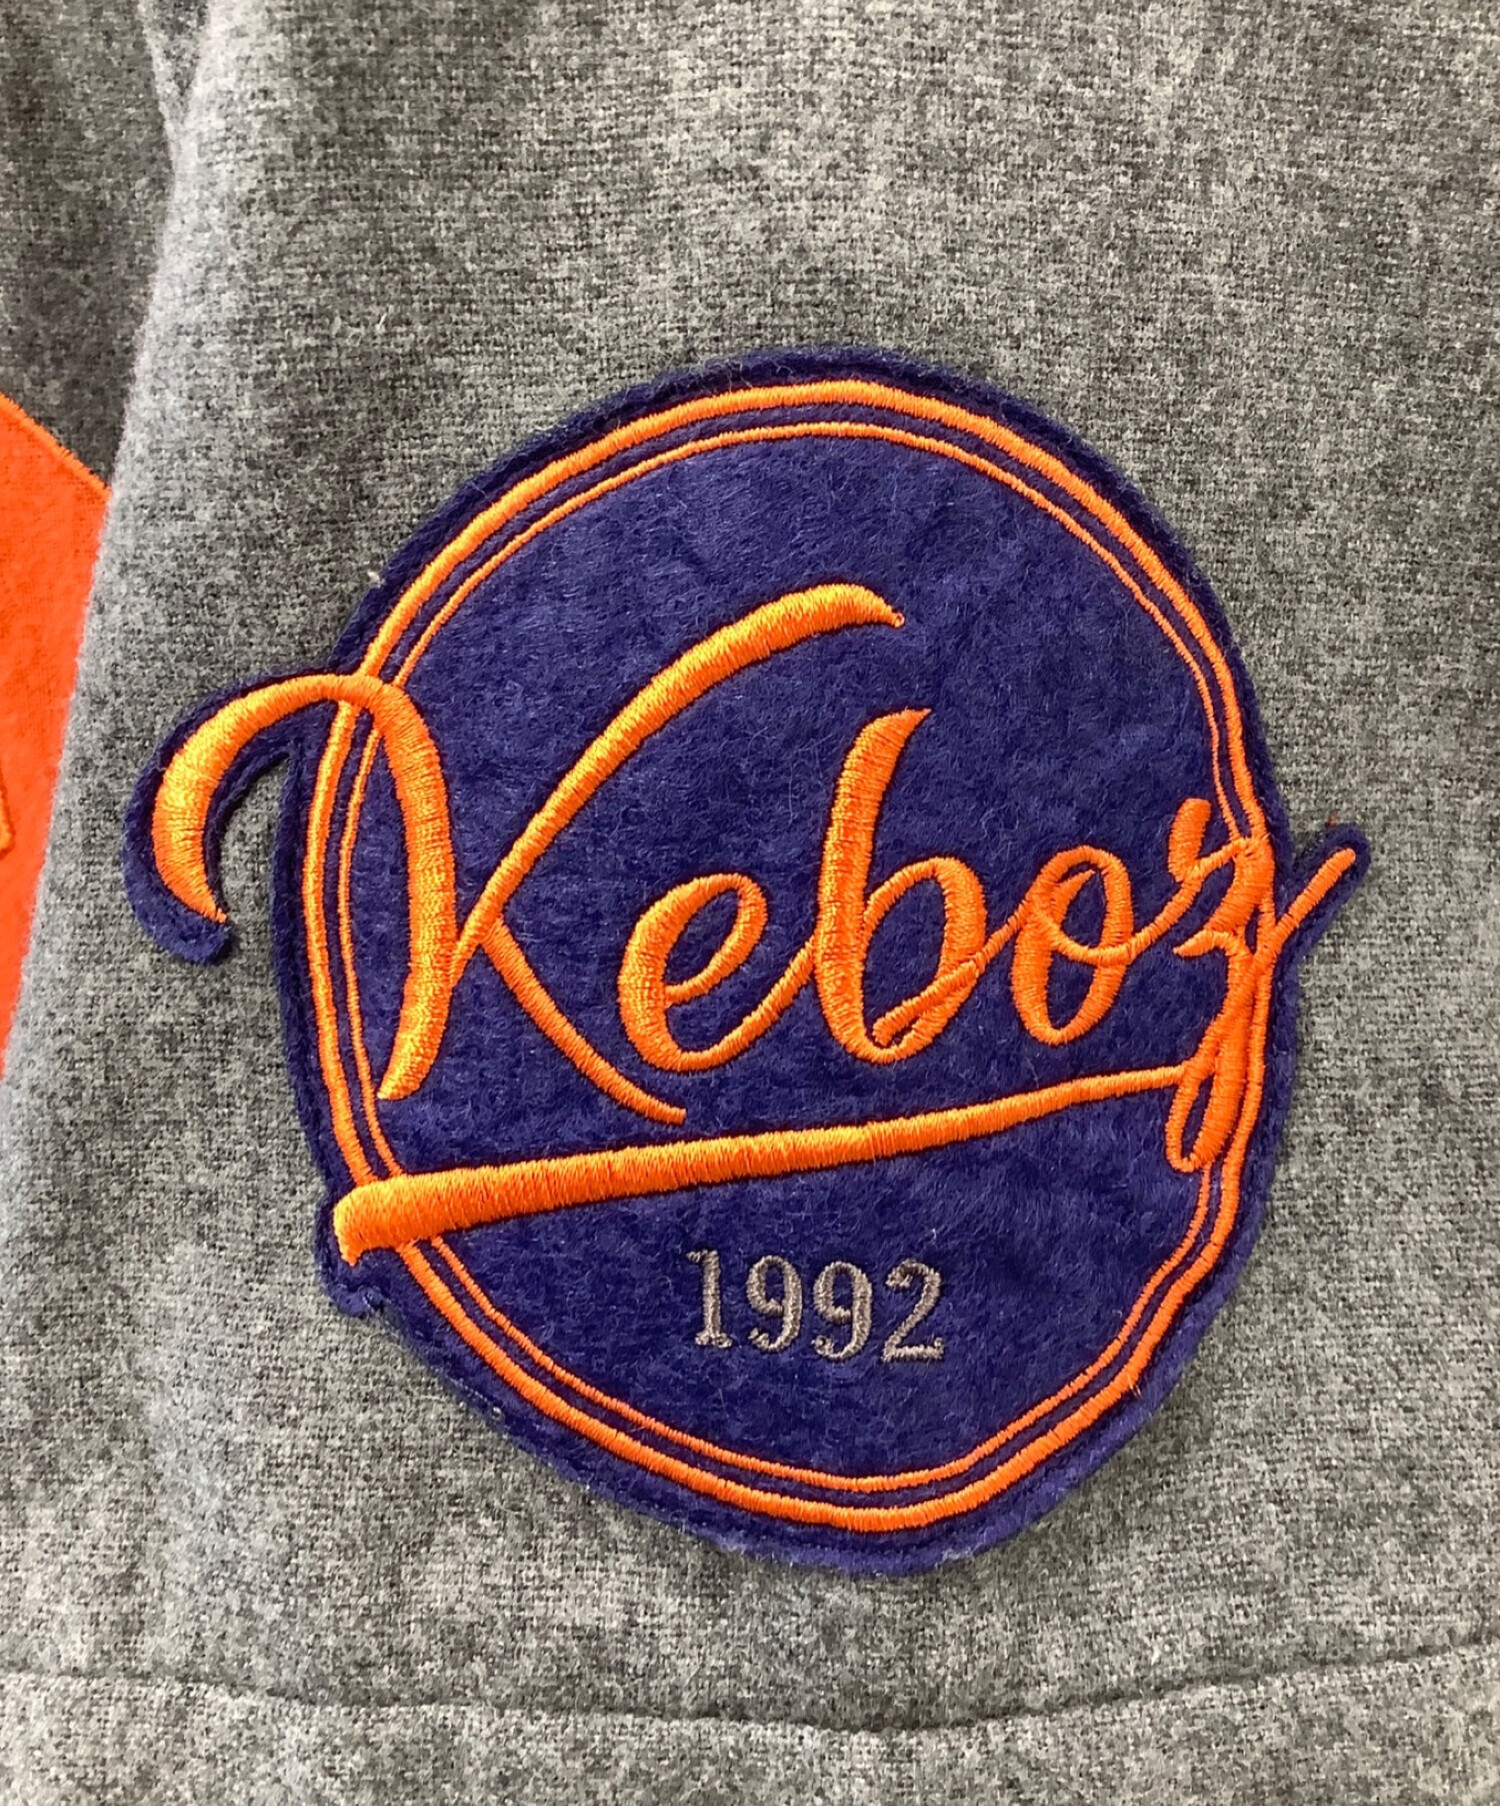 ゆうたkeboz ケボズ 初期 ベースボールシャツ サイズ L starter コラボ